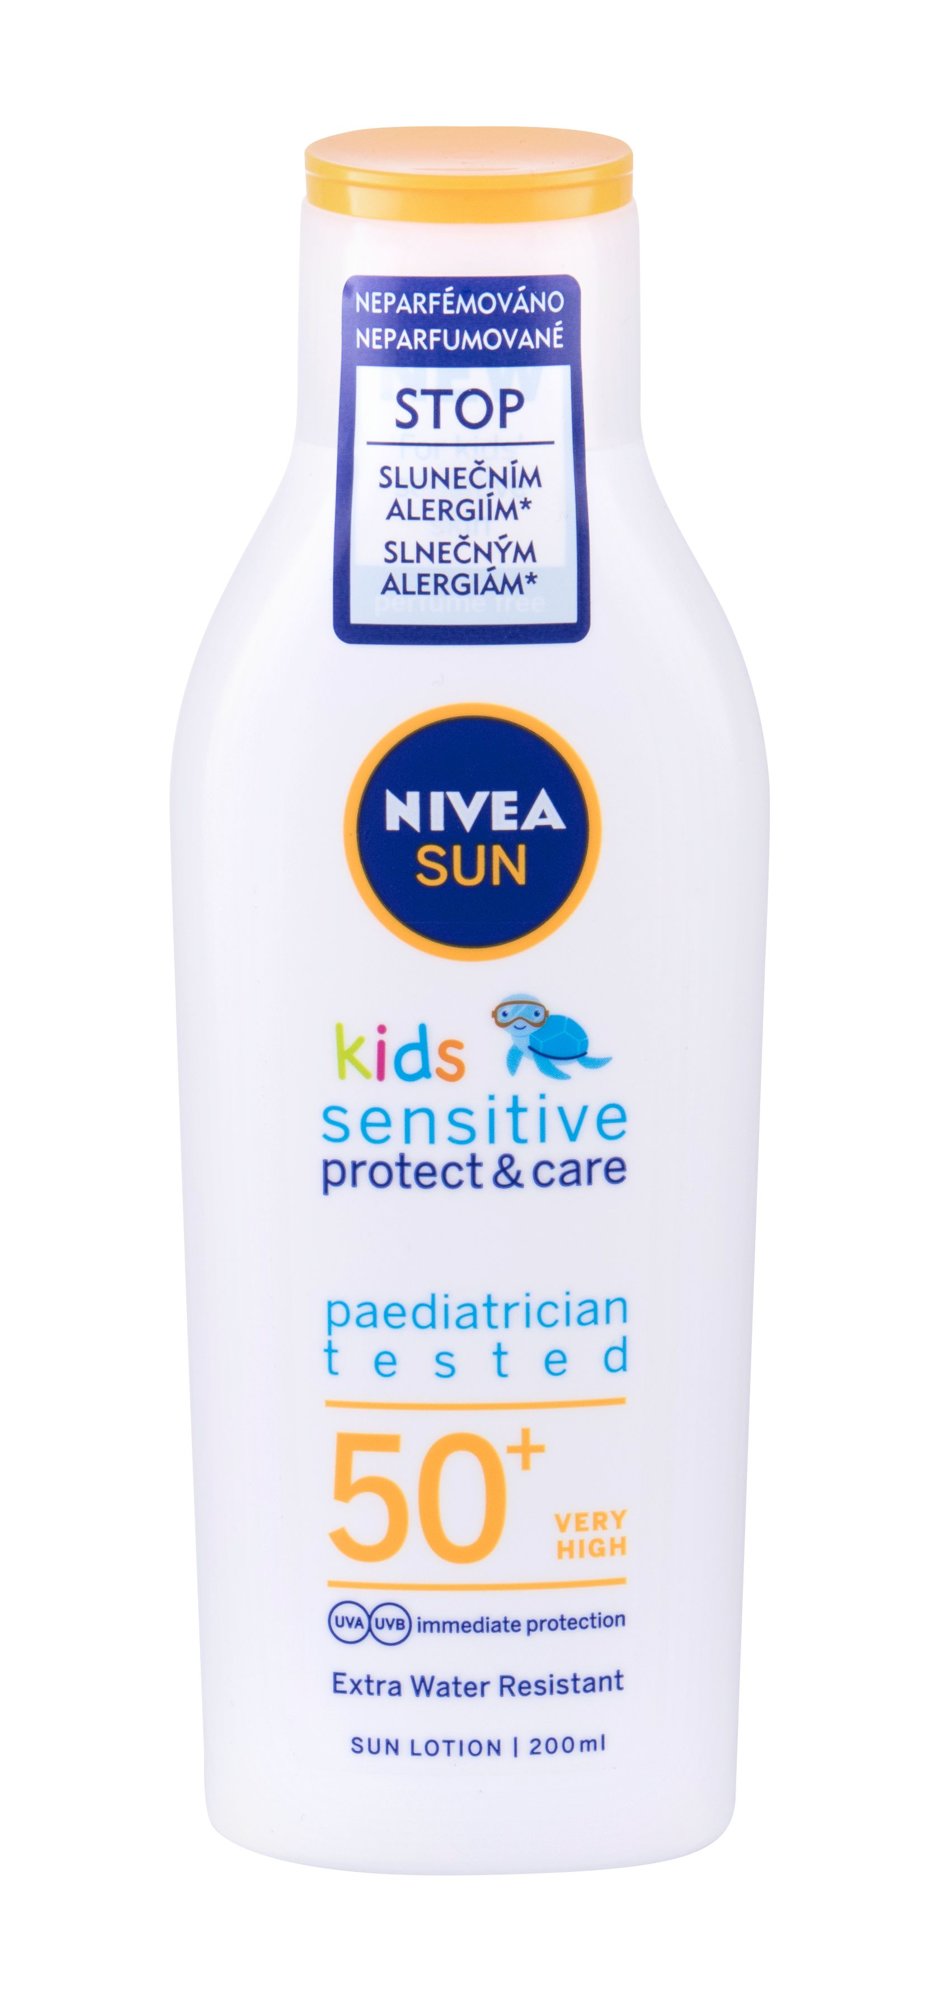 Nivea Sun Kids Protect & Sensitive 200ml įdegio losjonas